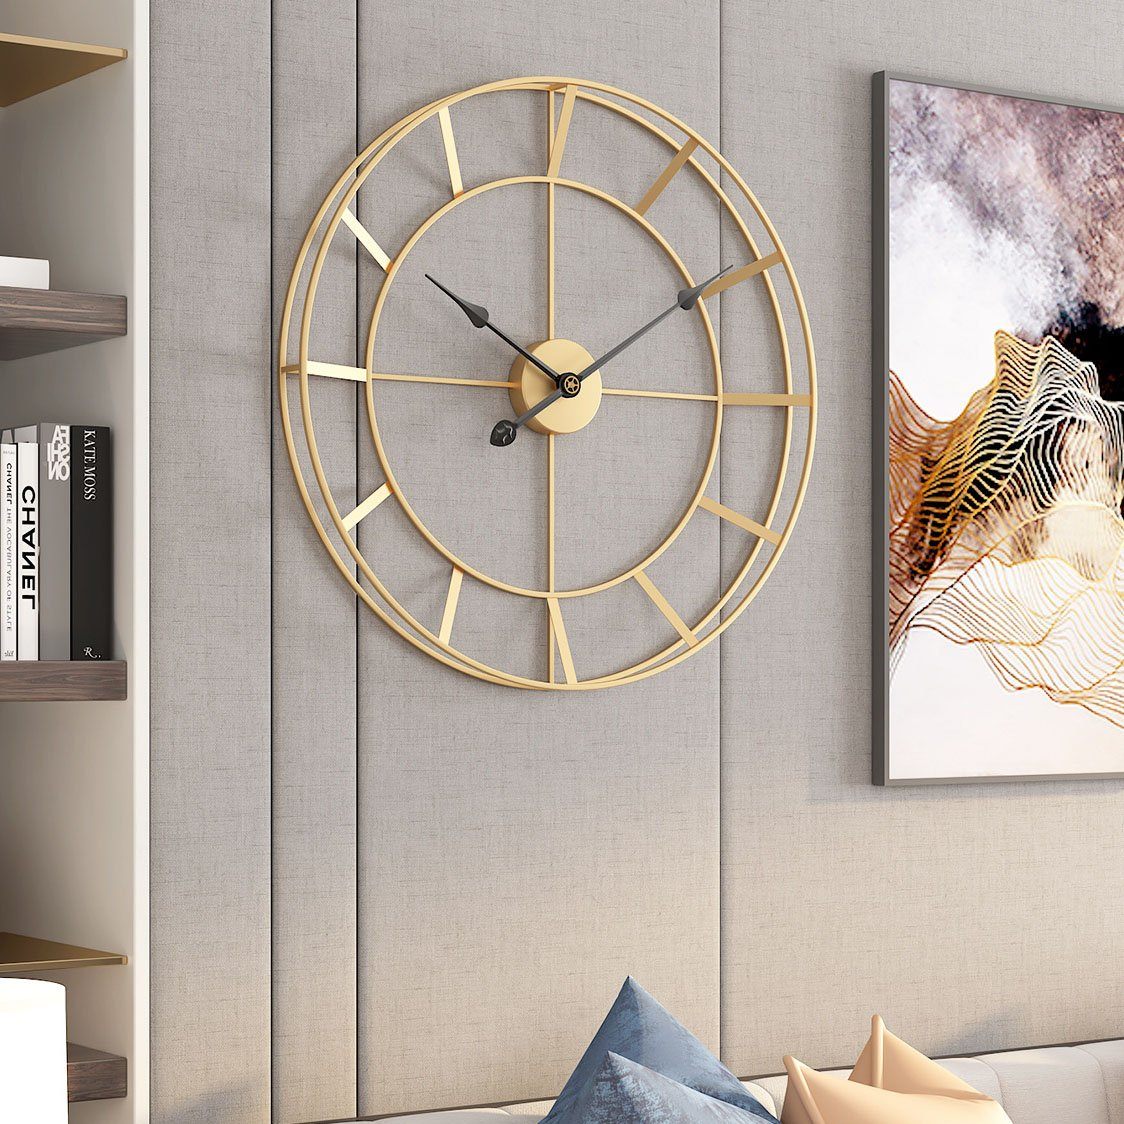 Minimalism Oversized Gold Clock